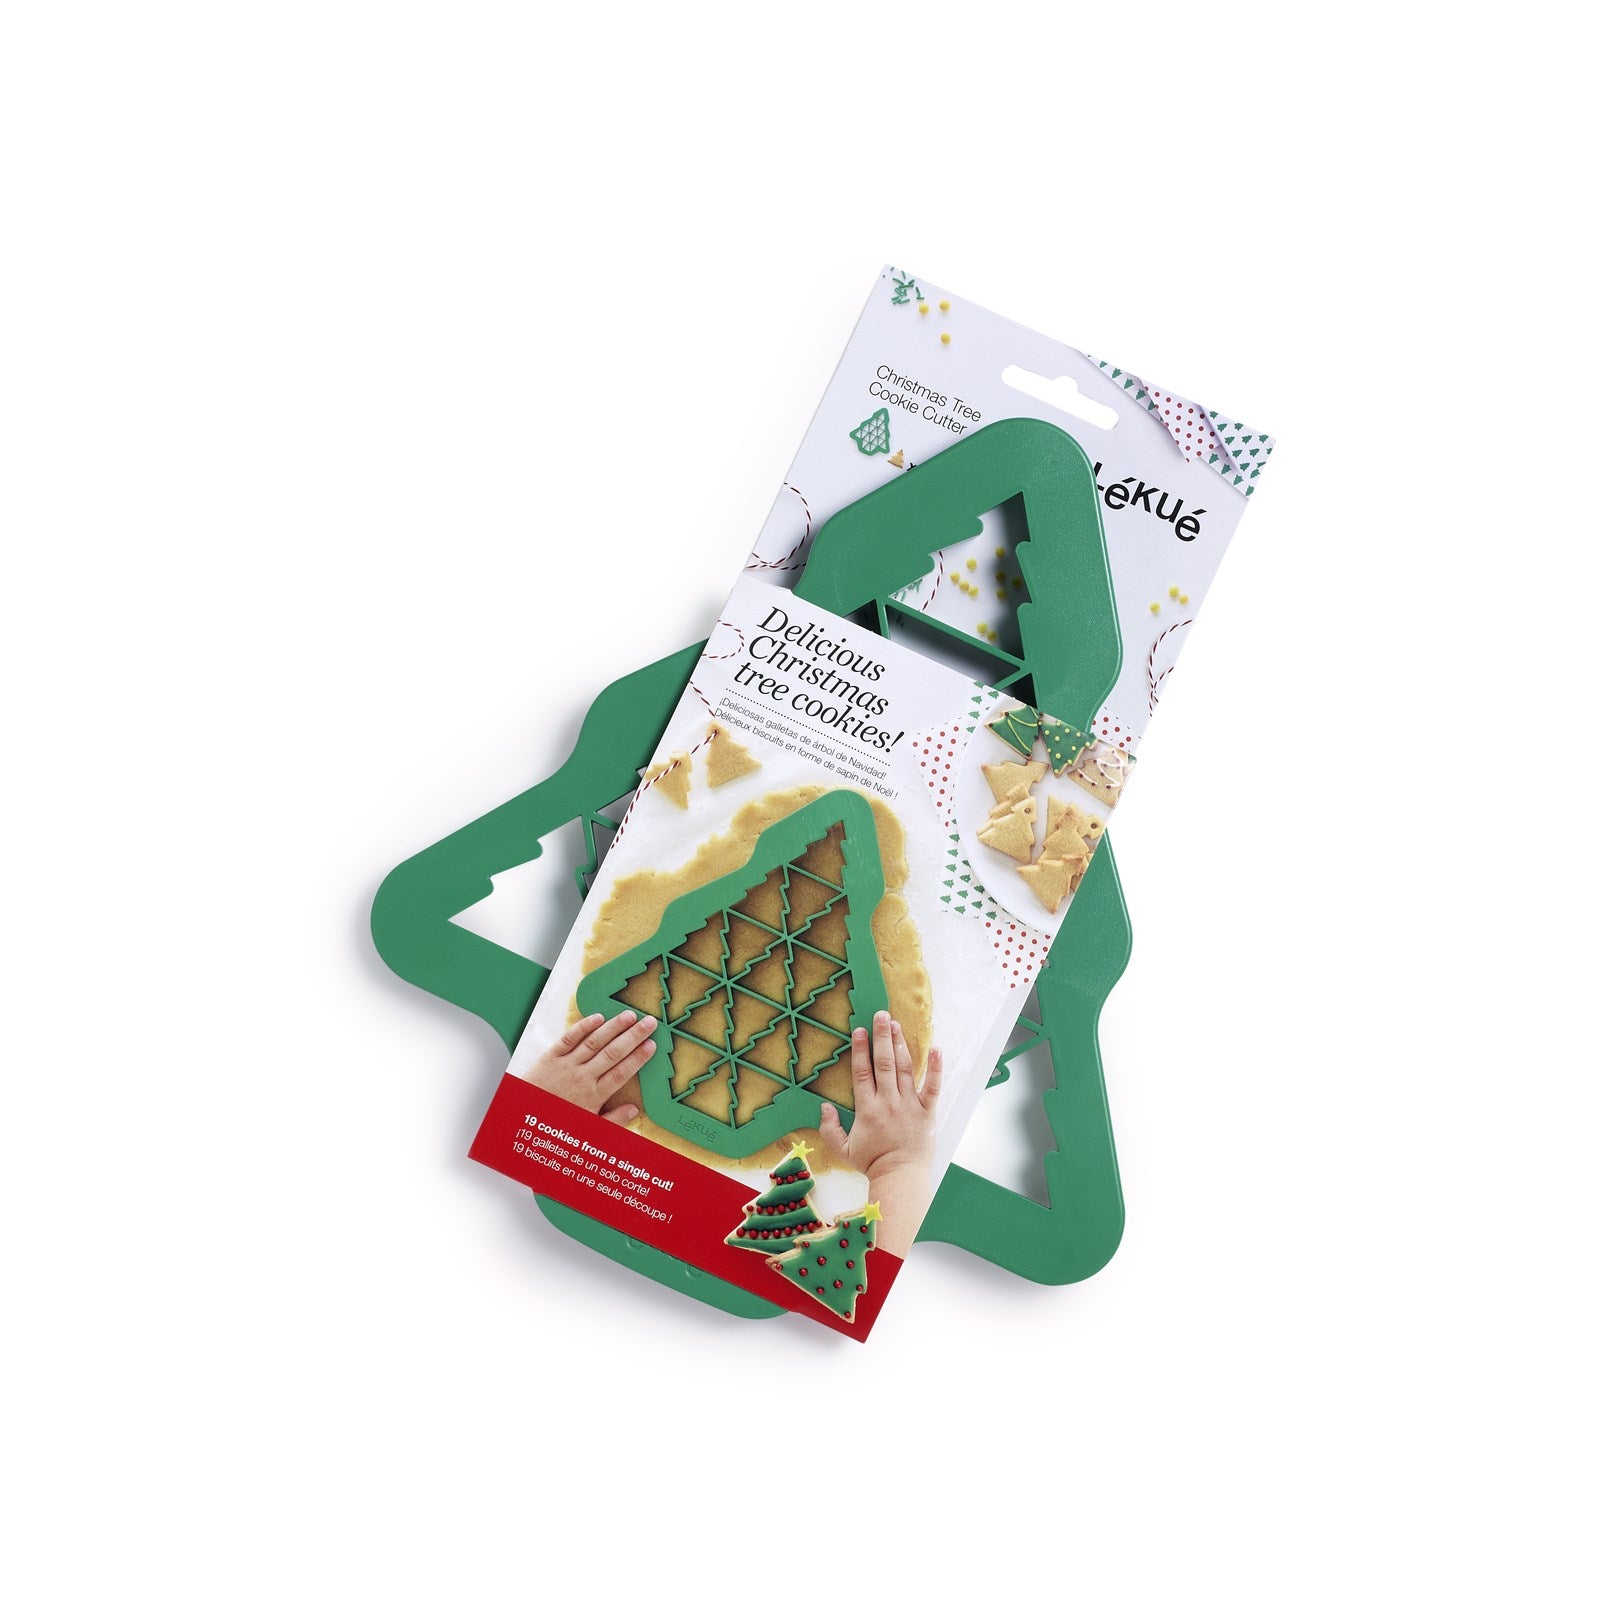 Cookie Ausstecher Weihnachten, grün in Grün präsentiert im Onlineshop von KAQTU Design AG. Backen ist von Lékué